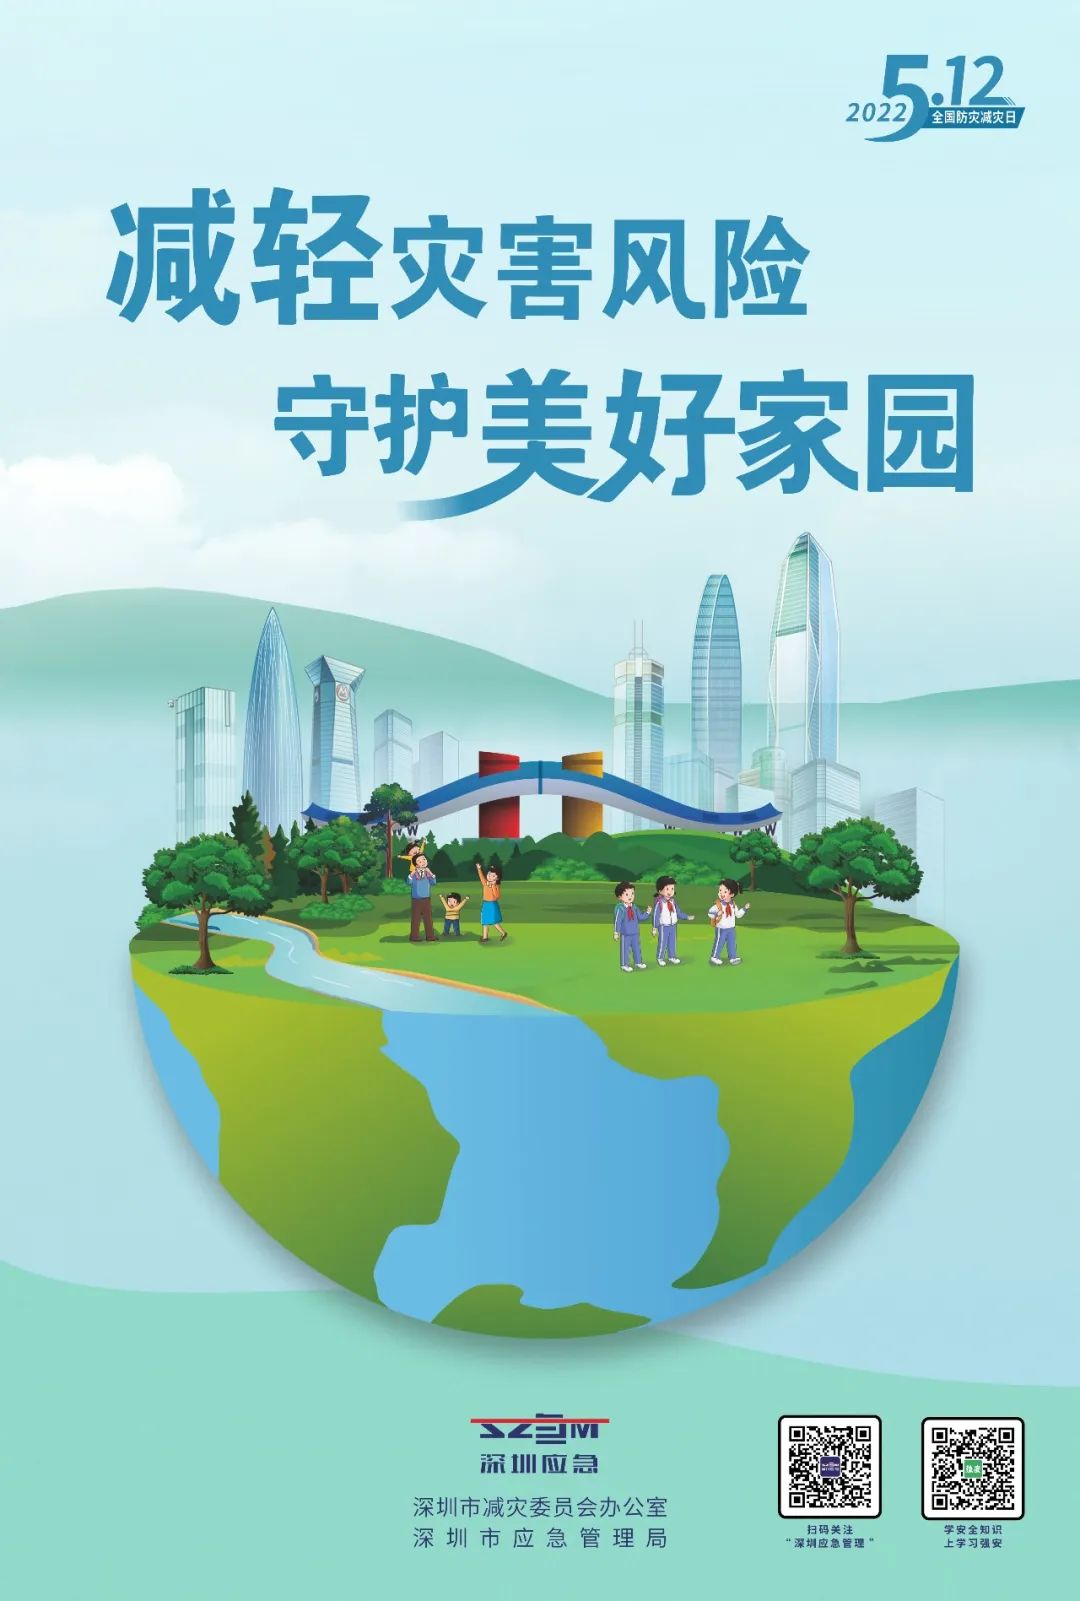 深圳启动2022年防灾减灾宣传周活动，更多精彩活动等您来解锁！